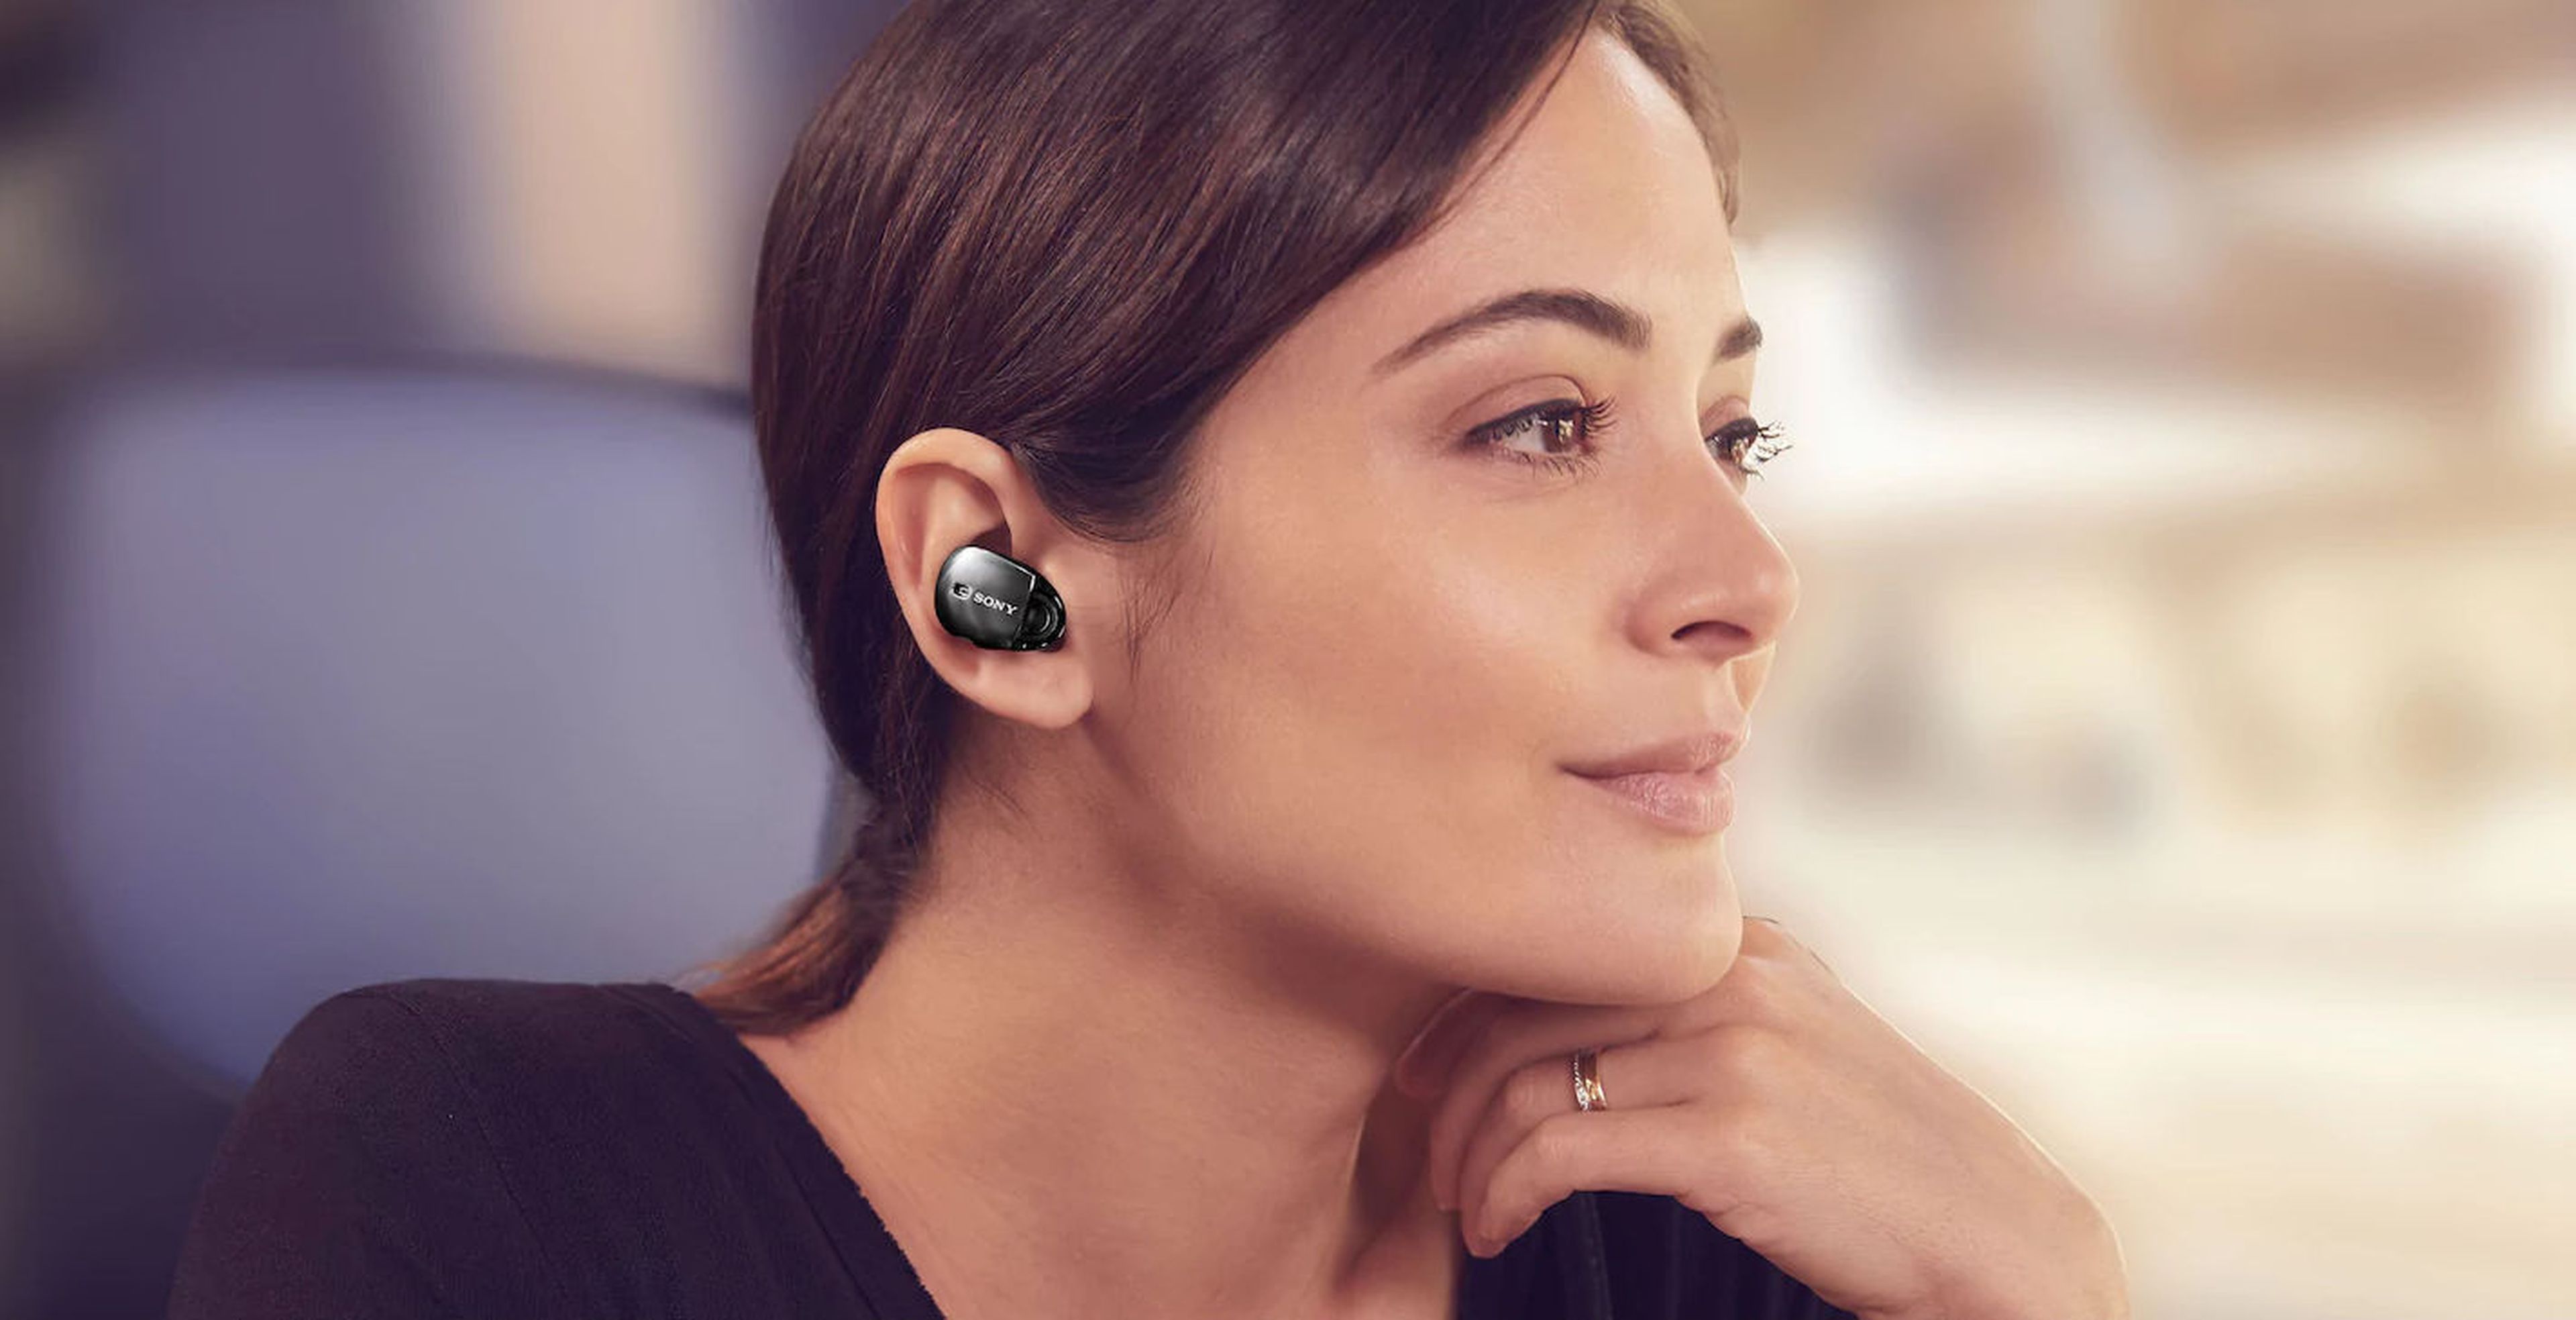 Los mejores auriculares bluetooth tipo AirPods (inalámbricos in-ear) que  puedes comprar en 2021